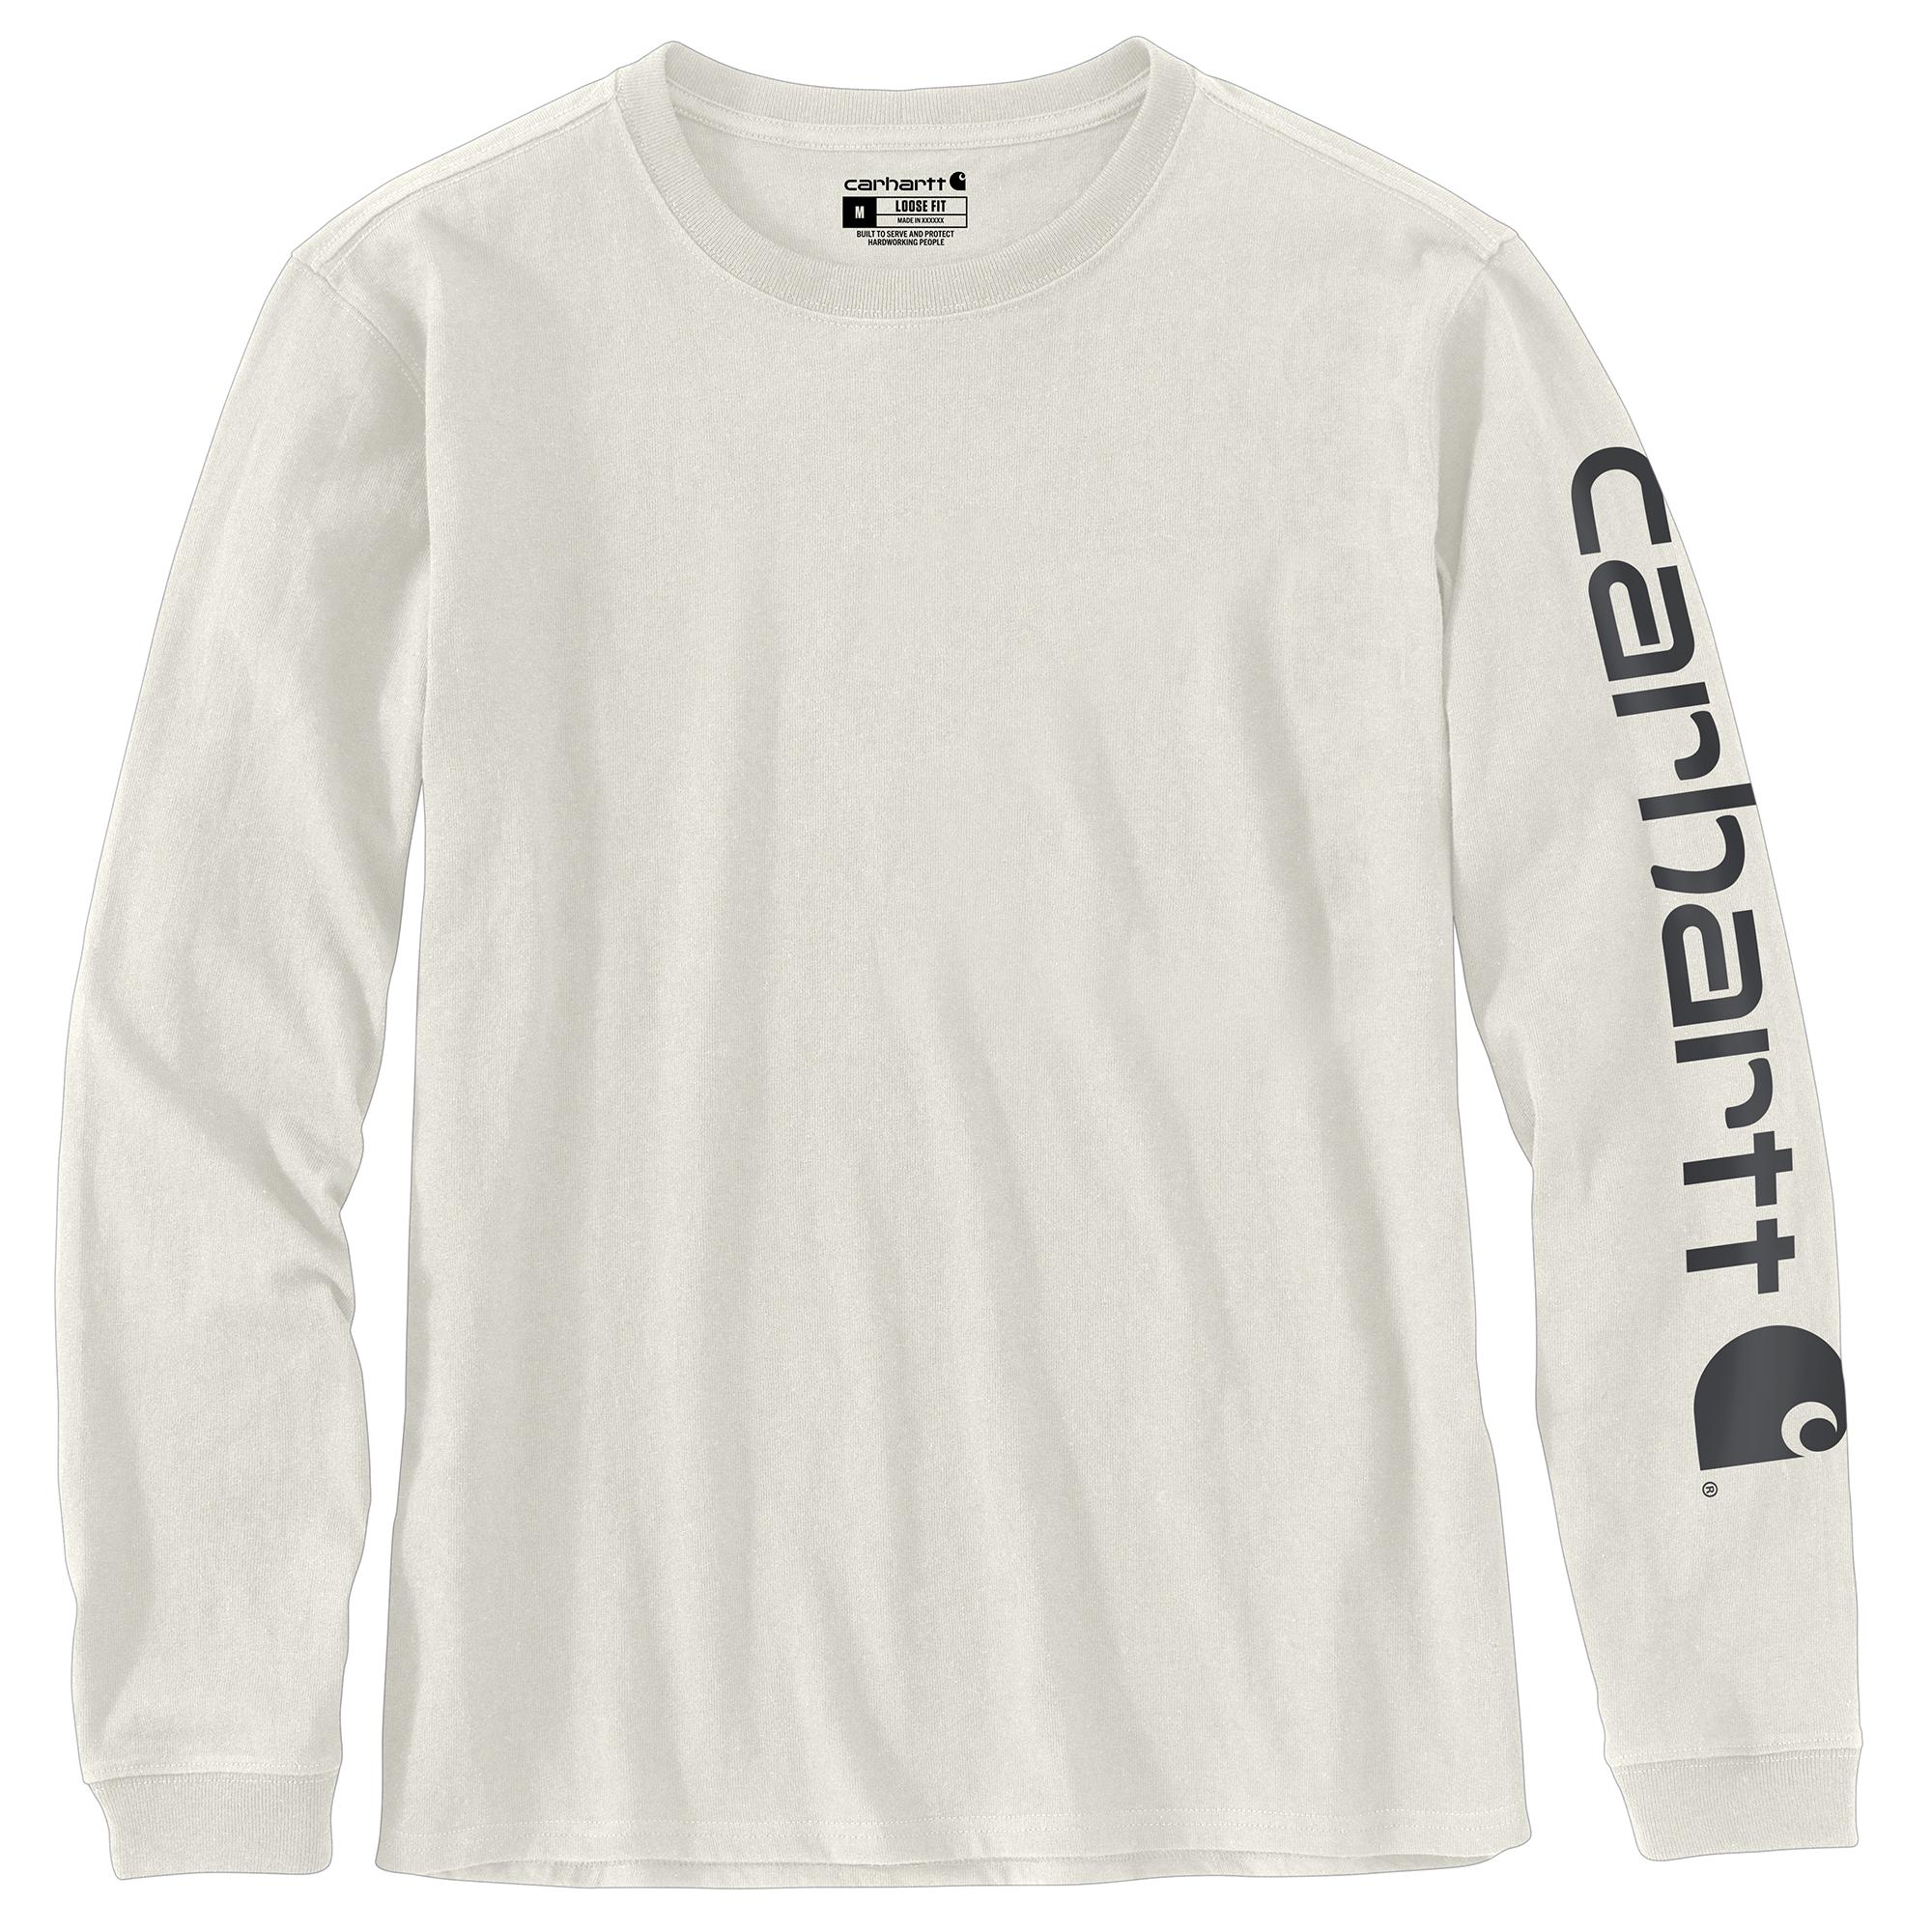 'Carhartt' Women's Workwear Logo Sleeve T-Shirt - Malt